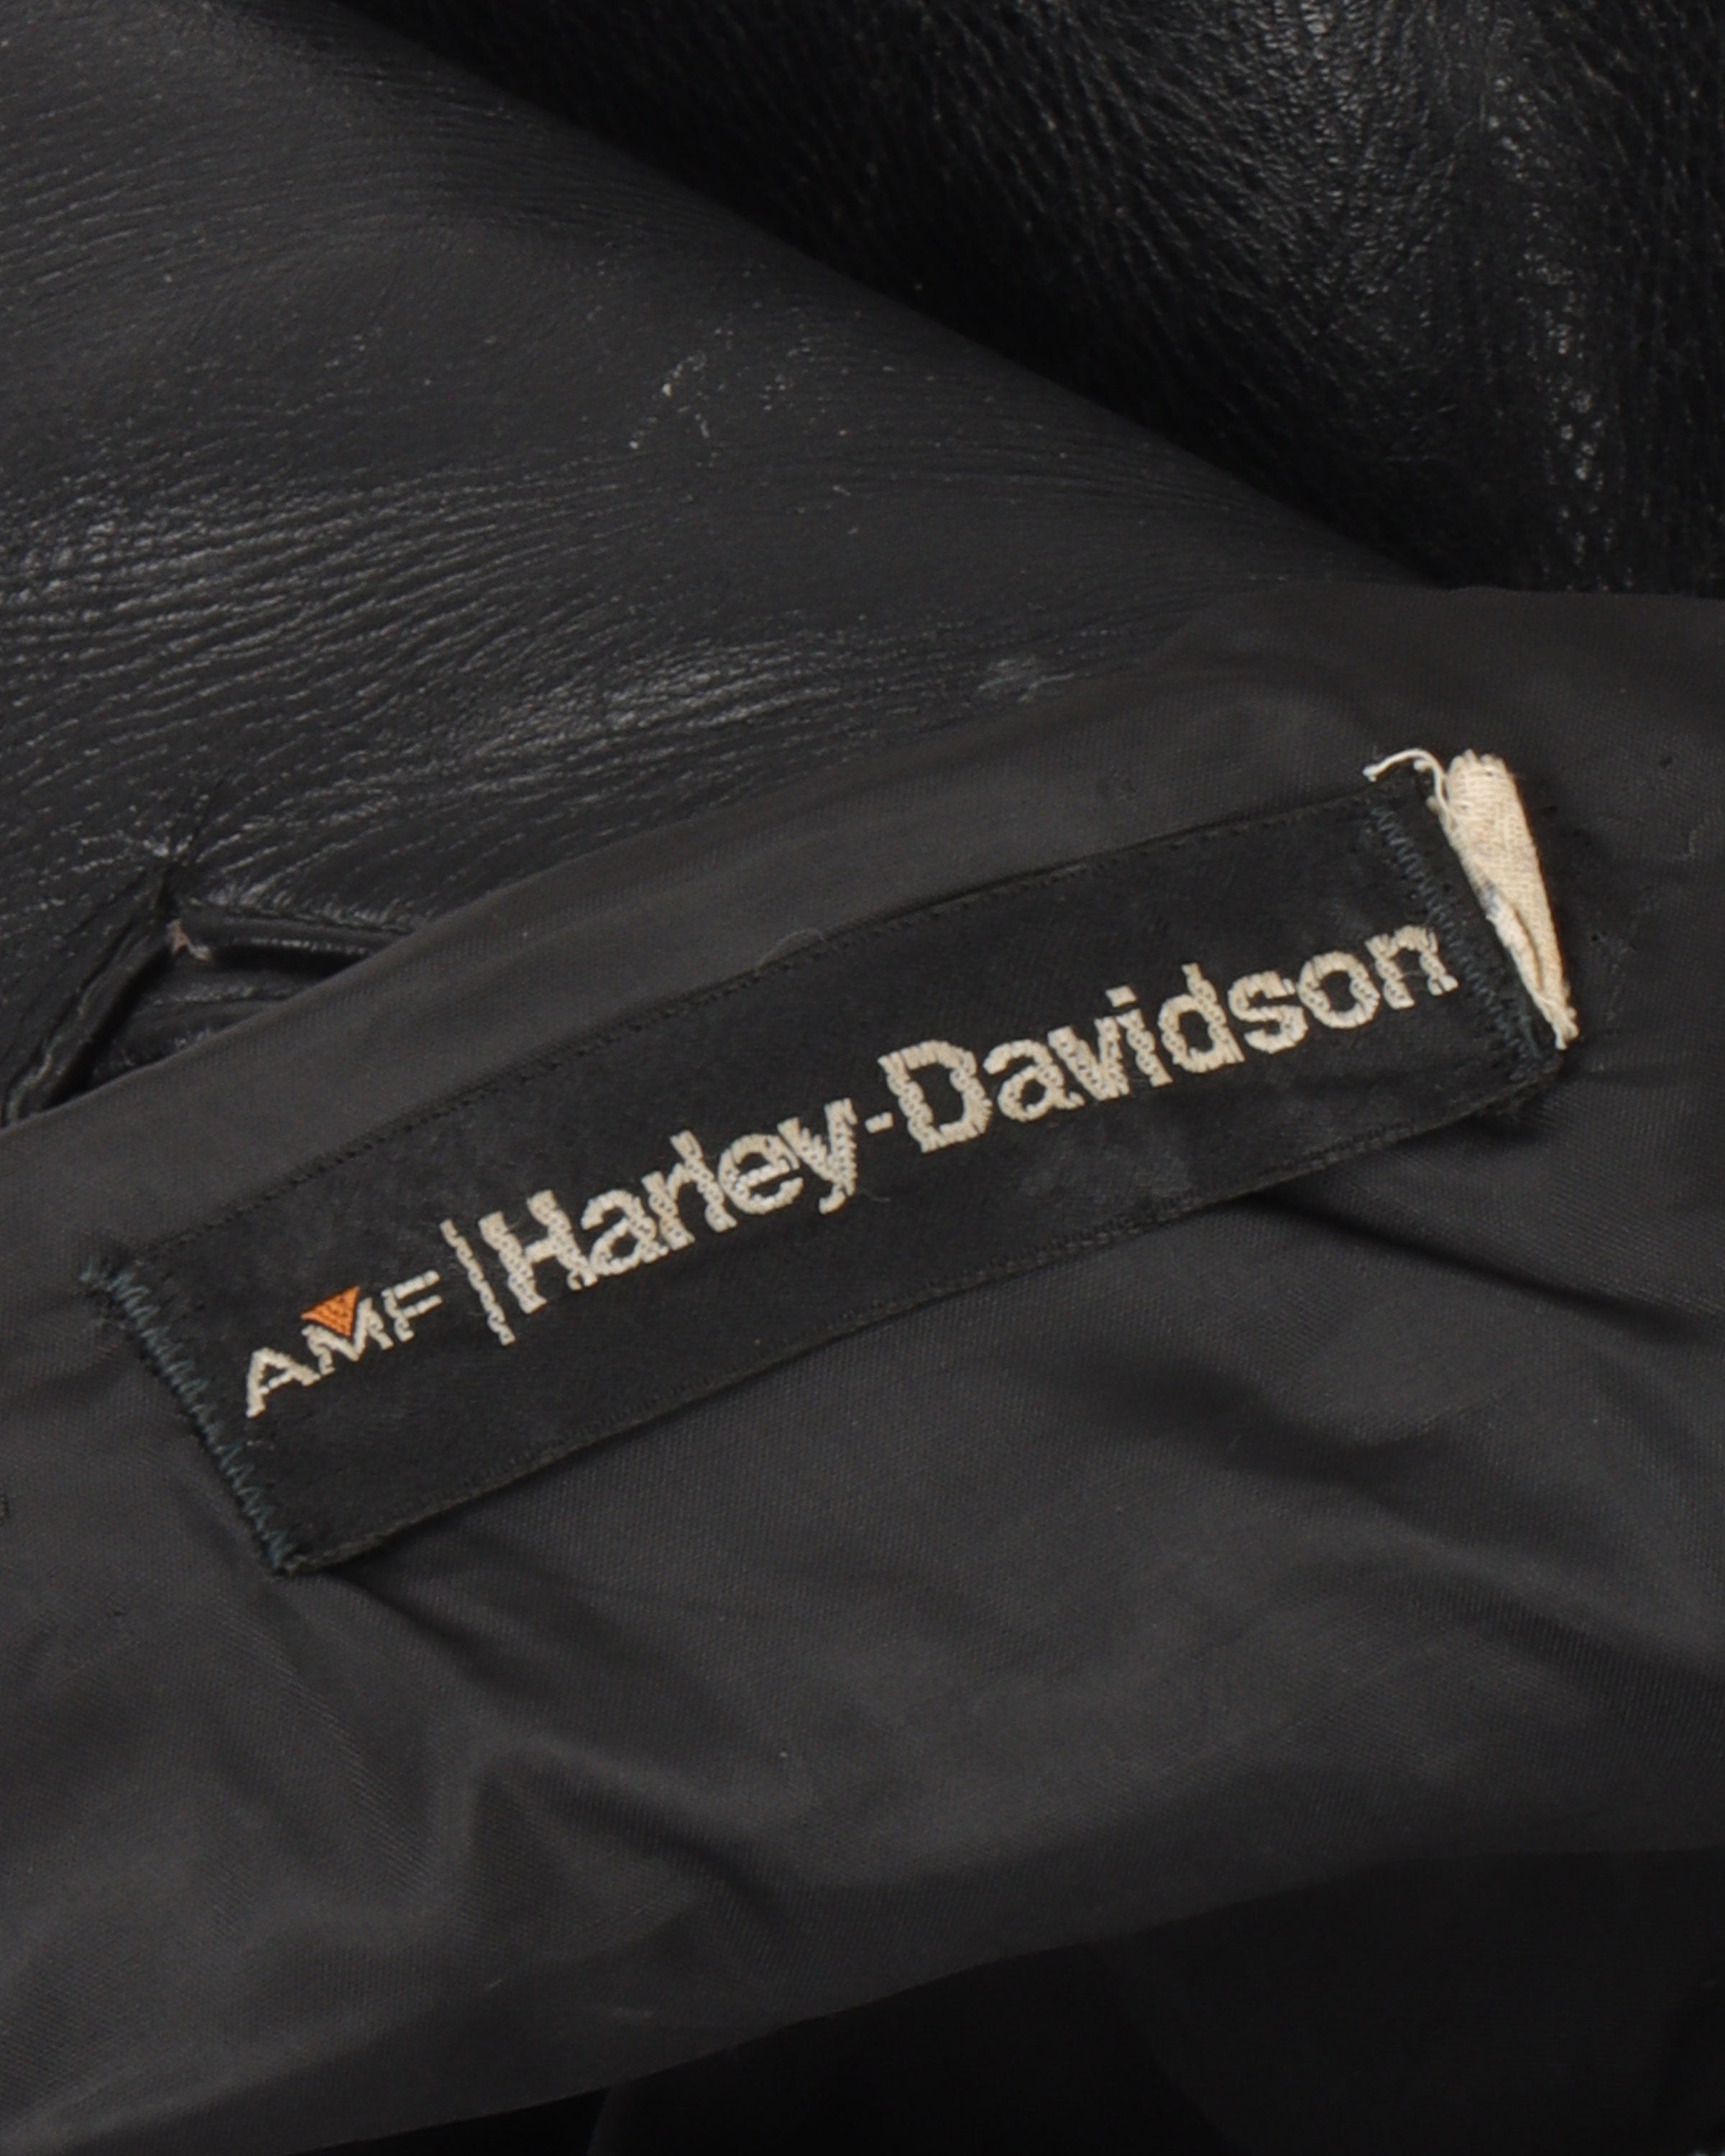 Vintage Harley Davidson Leather Pants